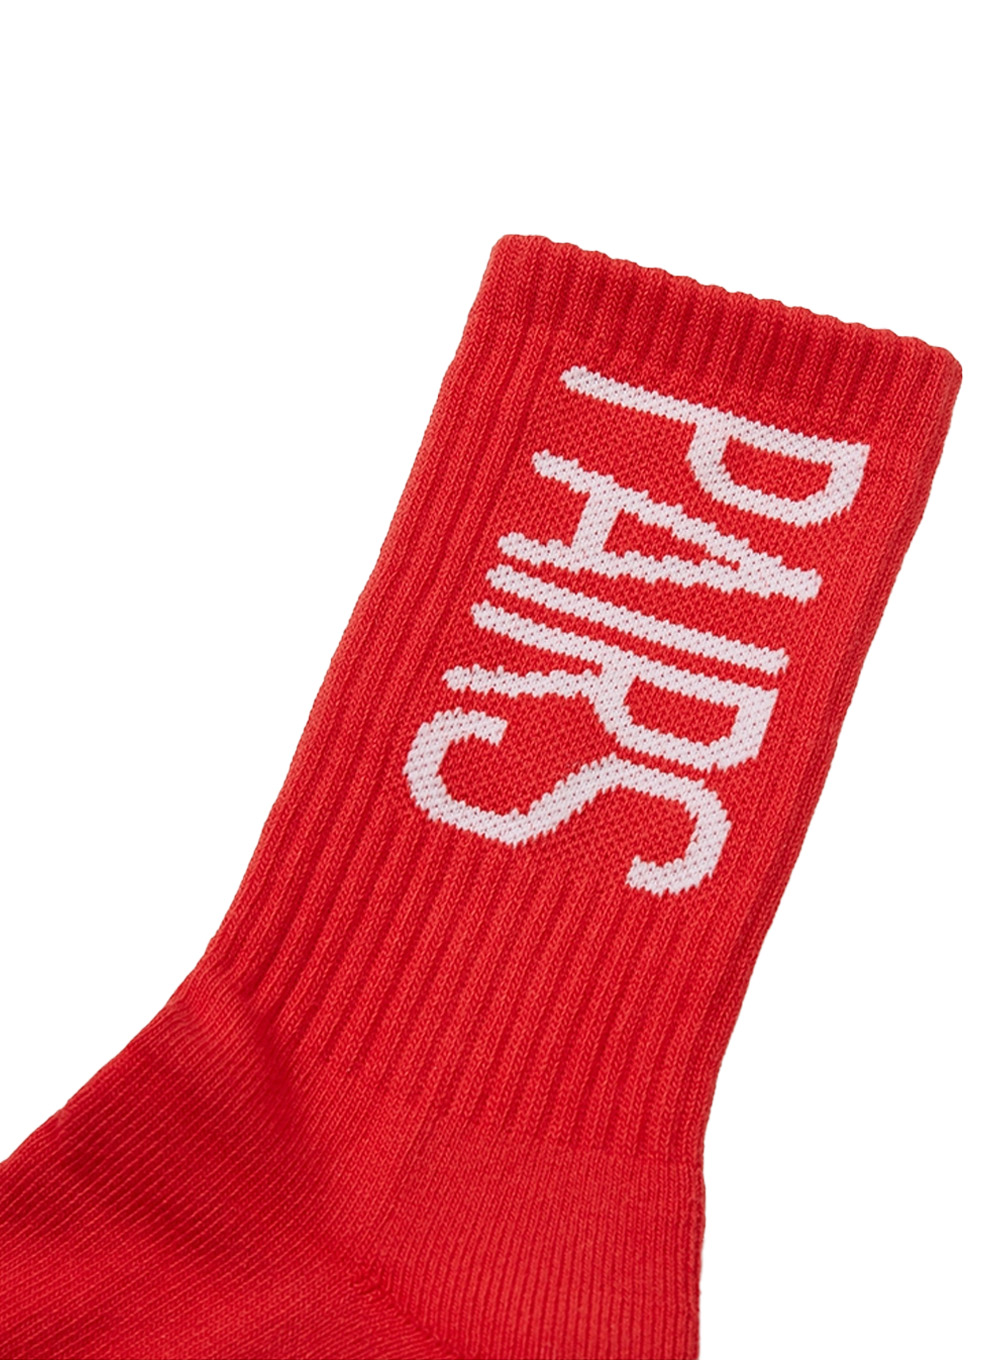 Pairs crew socks (red)